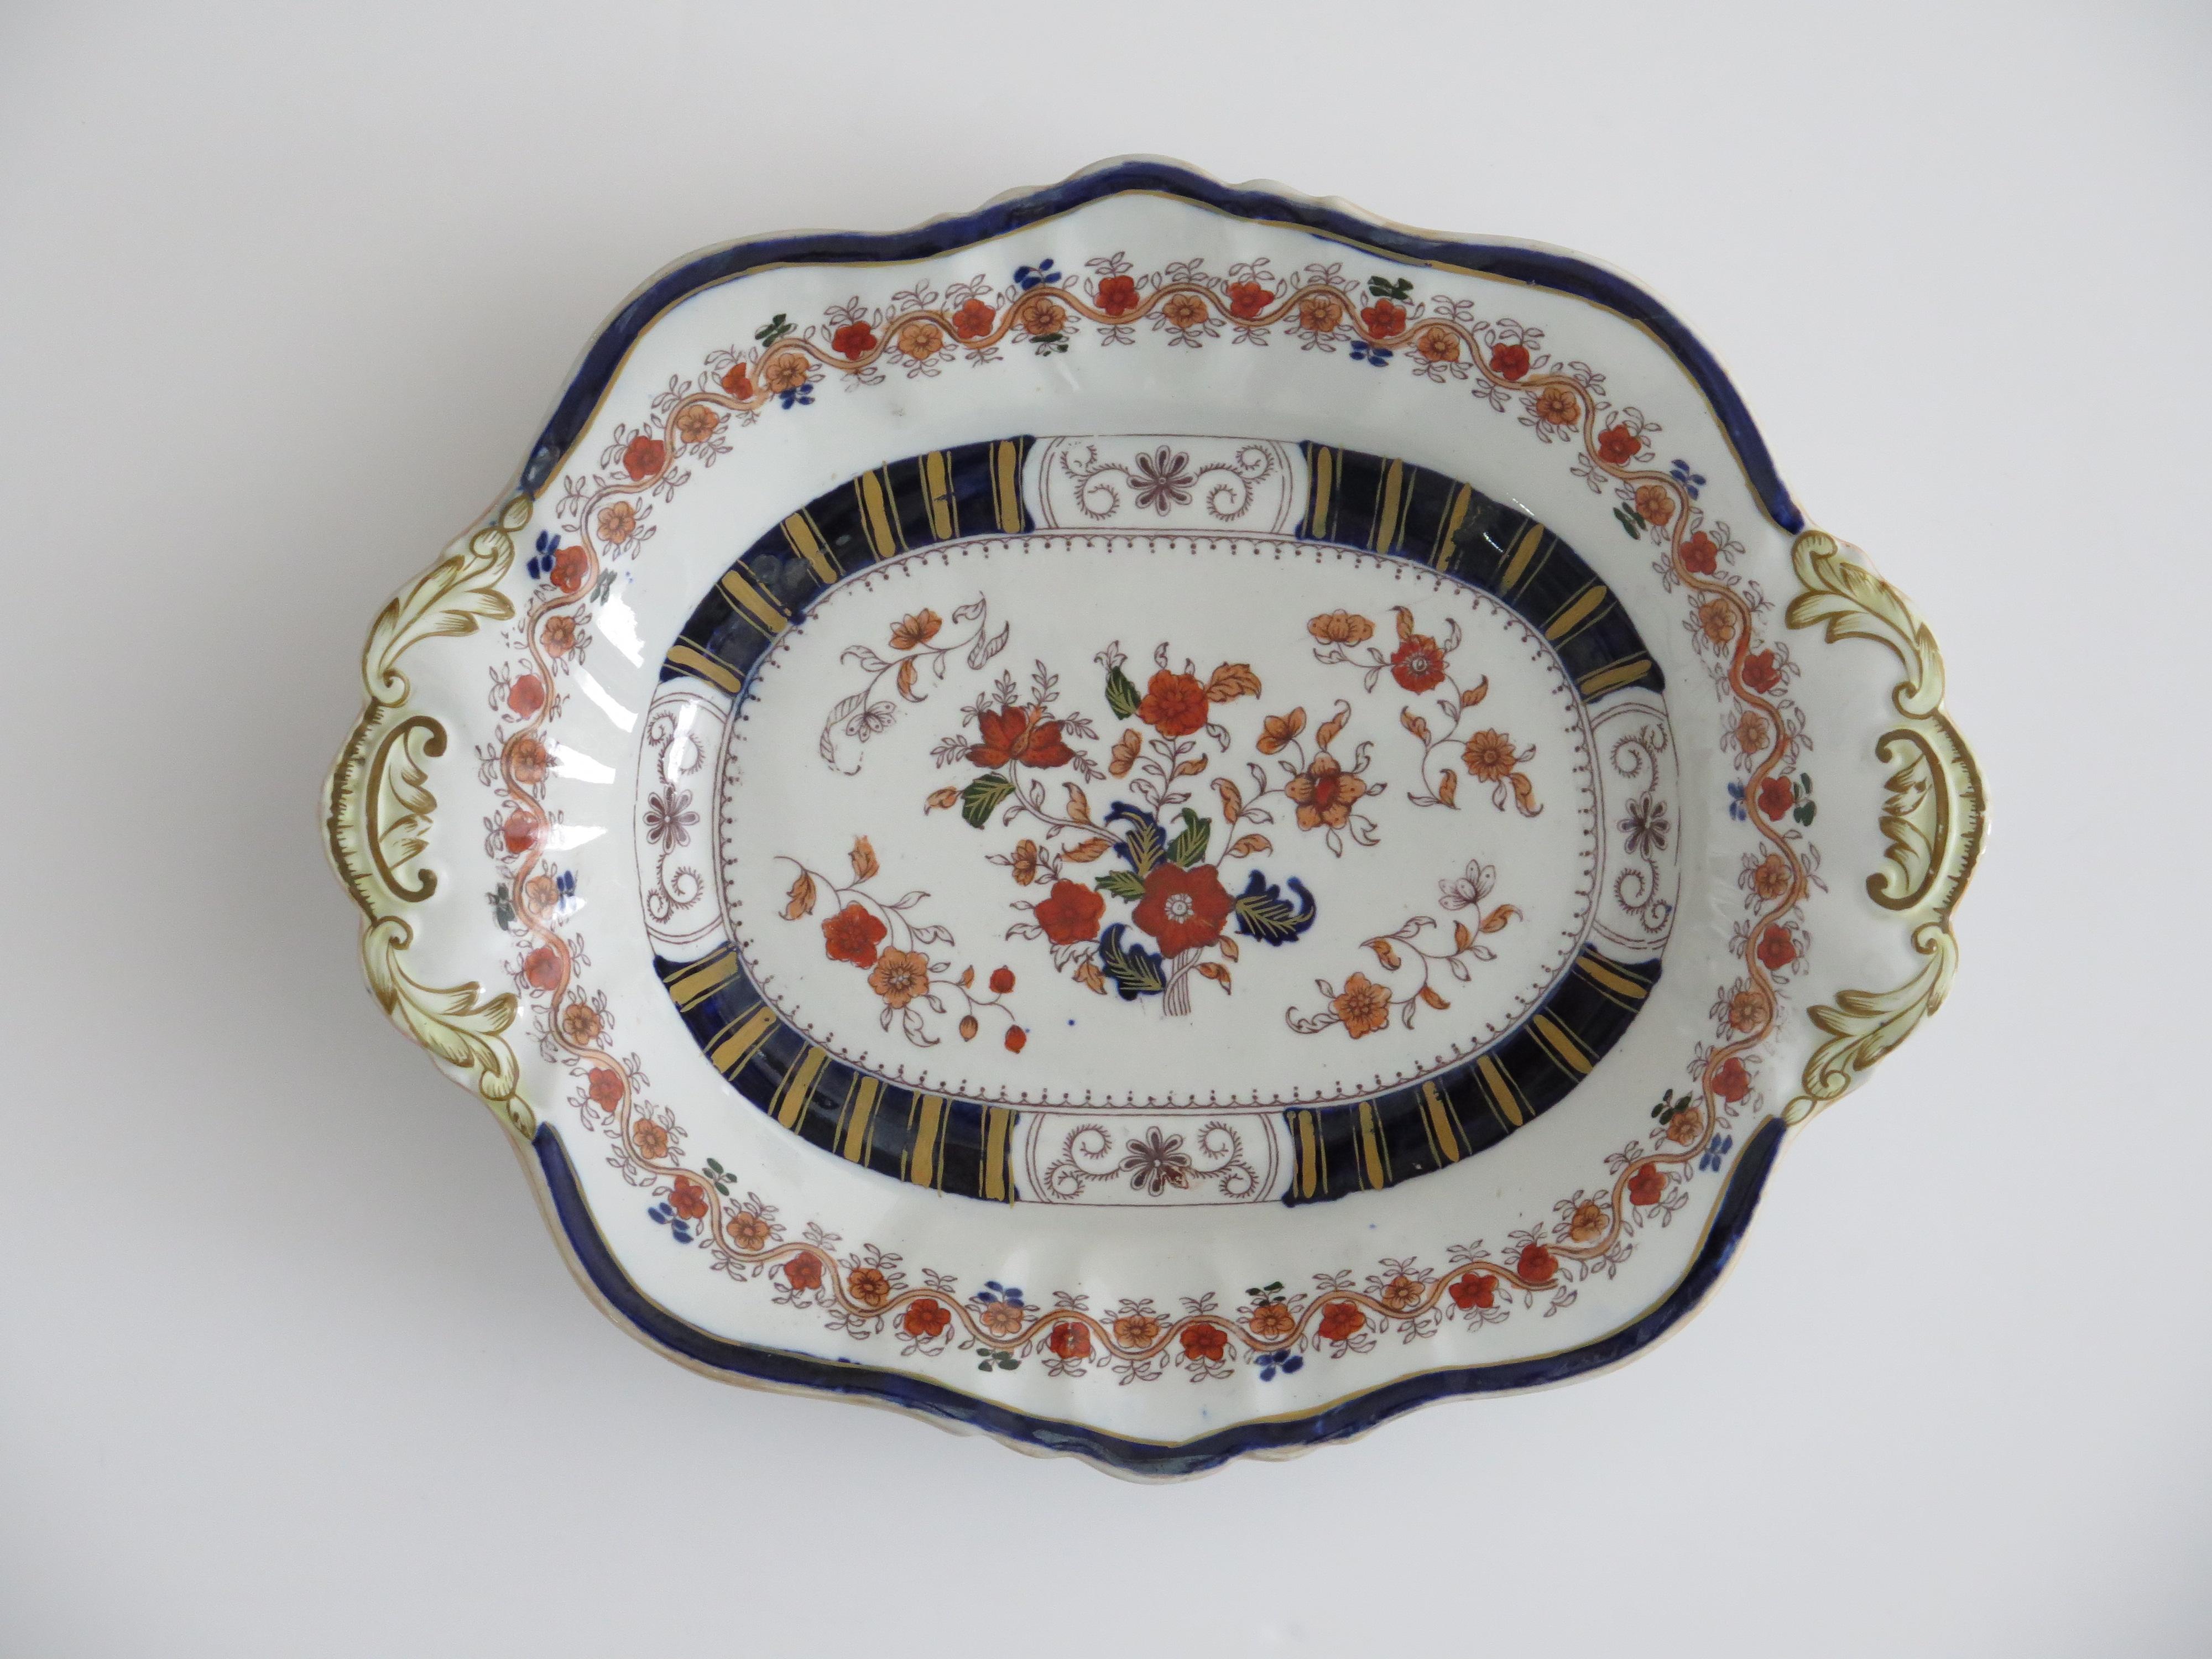 Il s'agit d'un plat de service très décoratif, fabriqué par Mason's Ironstone, Lane's, Angleterre, dans un motif floral très coloré, datant de la fin de la période géorgienne de la Régence anglaise, vers 1825-1830.

Ce plat ou plat à dessert a une